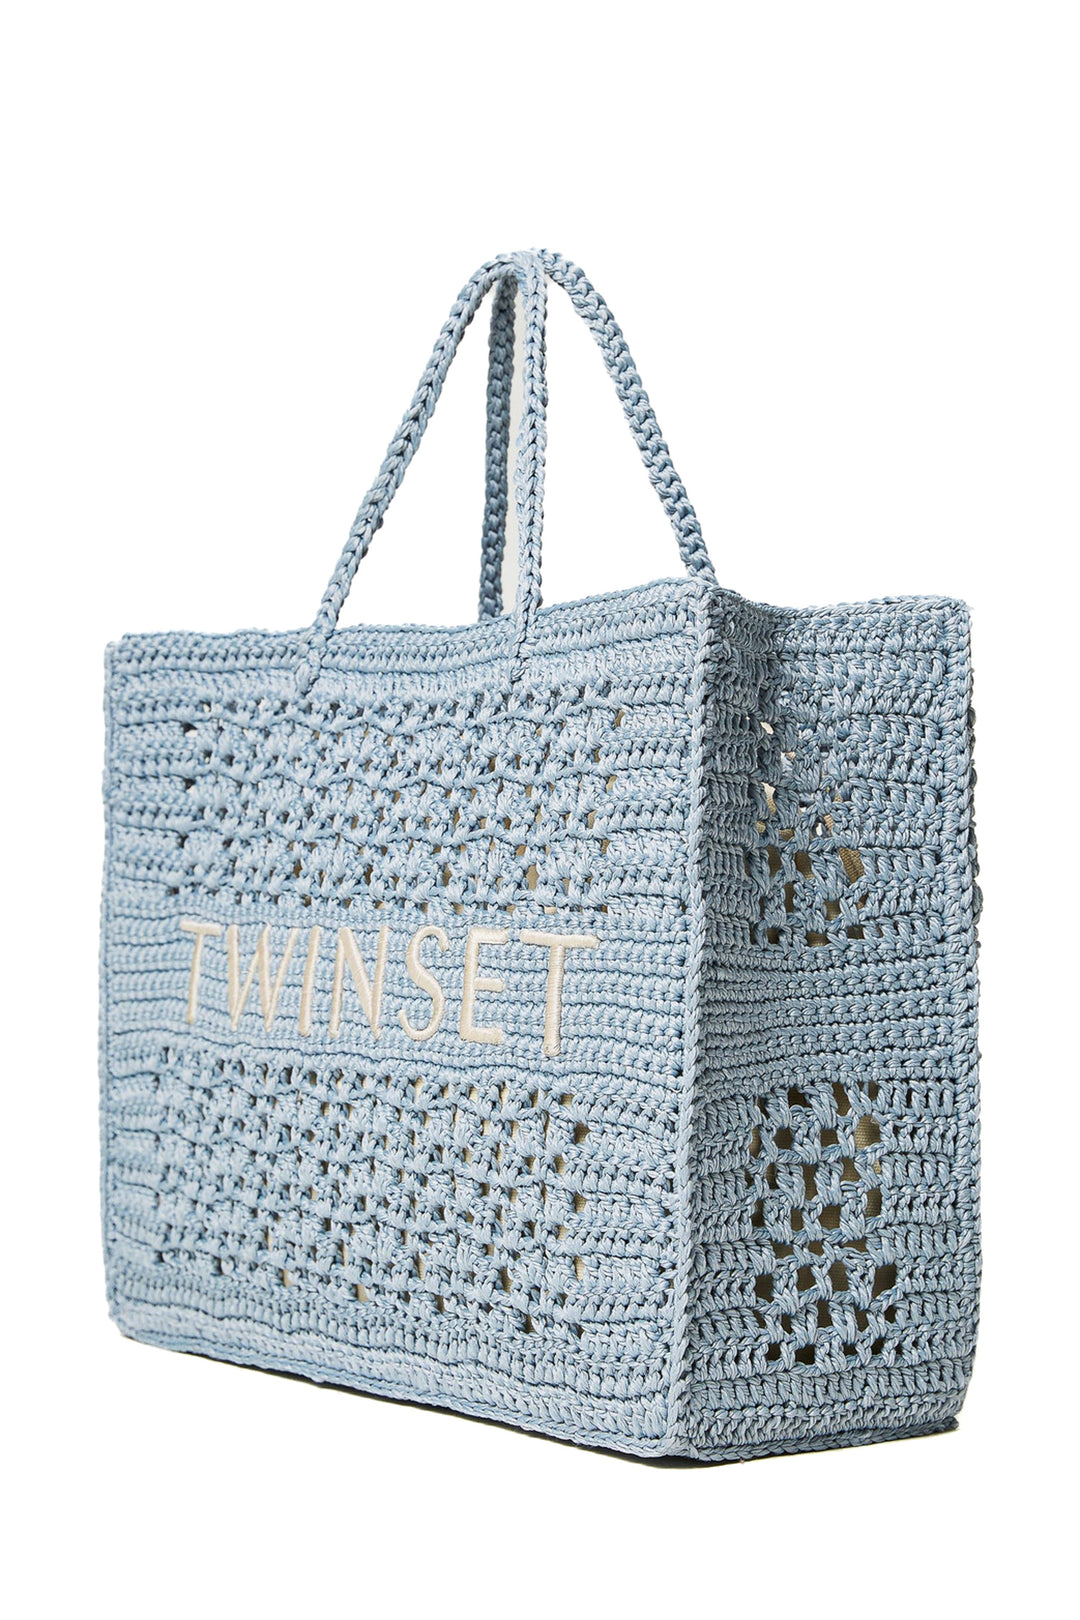 TWINSET Borsa shopper 'Bohémien' crochet azzurra - Mancinelli 1954